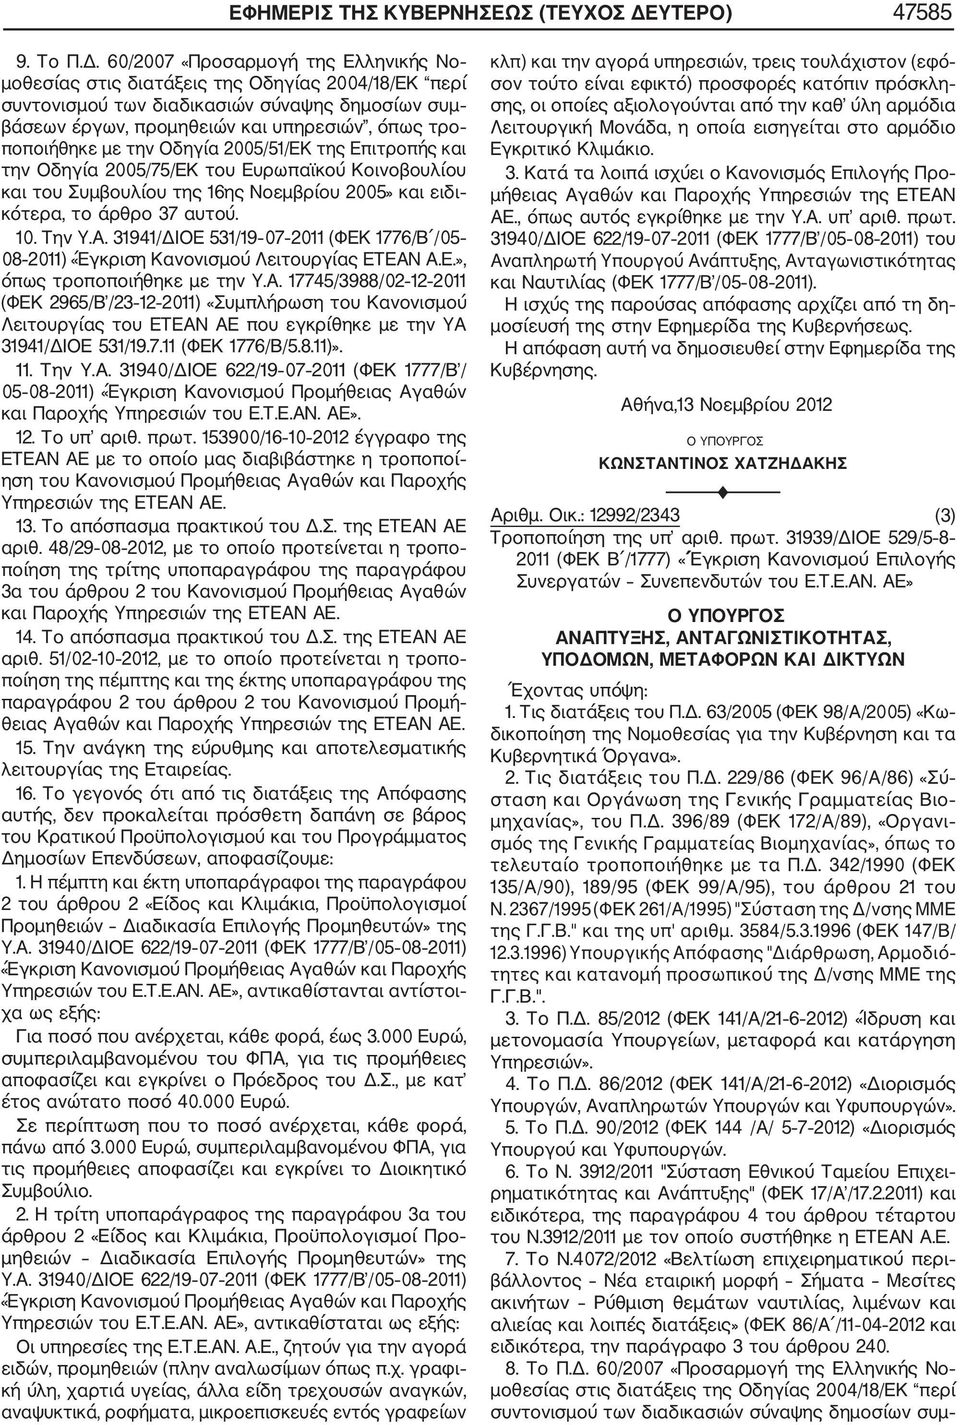 60/2007 «Προσαρμογή της Ελληνικής Νο μοθεσίας στις διατάξεις της Οδηγίας 2004/18/ΕΚ περί συντονισμού των διαδικασιών σύναψης δημοσίων συμ βάσεων έργων, προμηθειών και υπηρεσιών, όπως τρο ποποιήθηκε